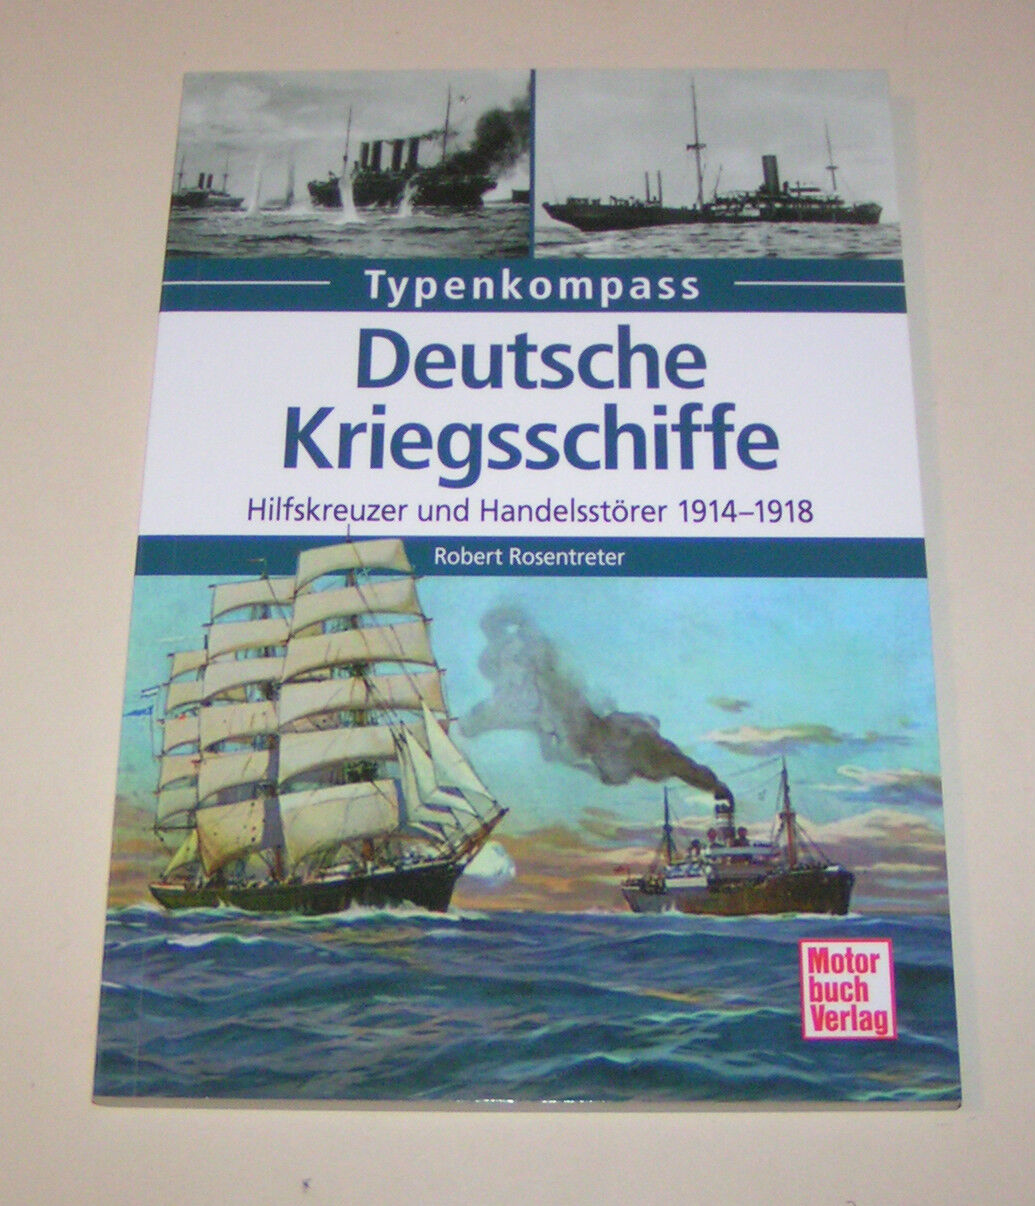 Deutsche Kriegsschiffe Hilfskreuzer und Handelsstörer 1914 - 1918 - Typenkompass